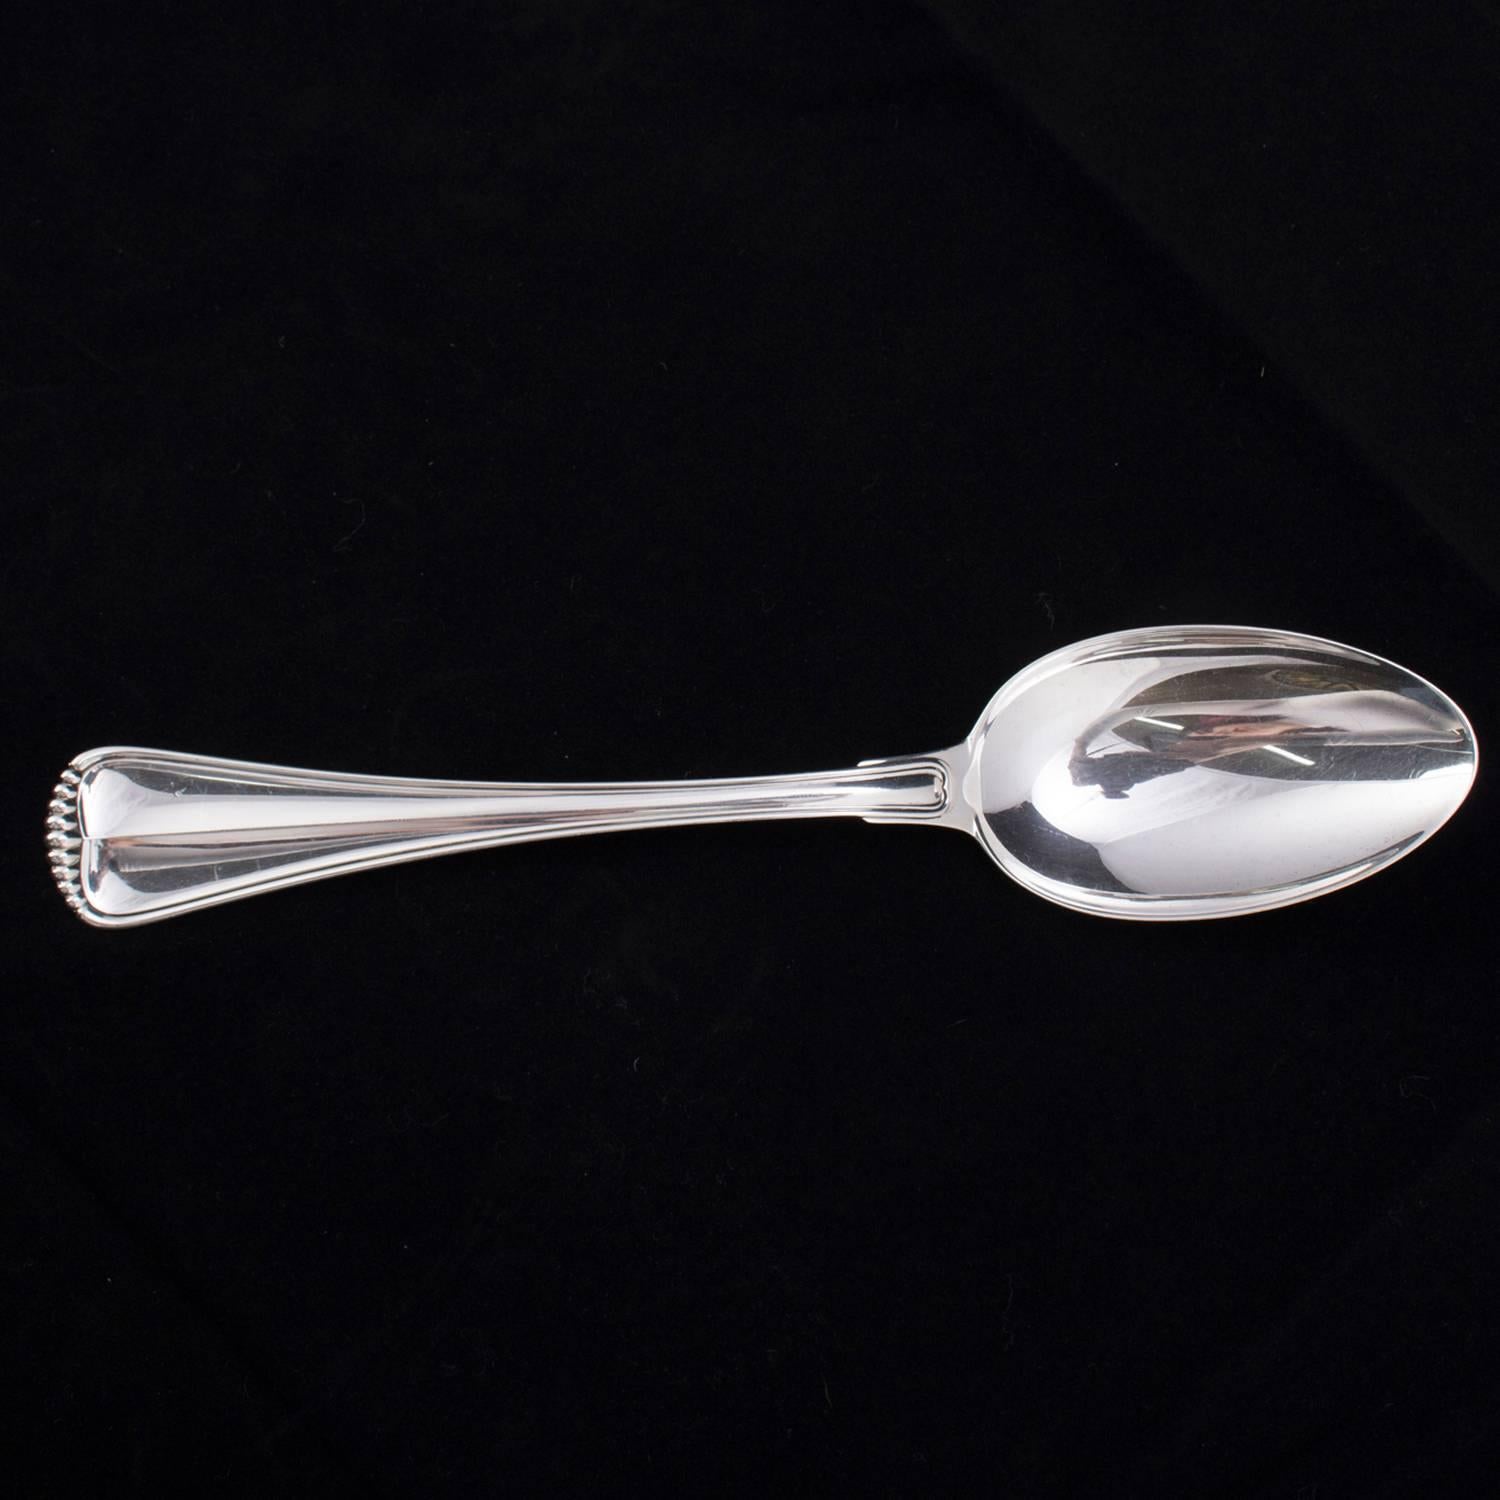 Italian Buccellati Milano Sterling Silver Serving Spoon, 4.18 toz, circa 1930 8